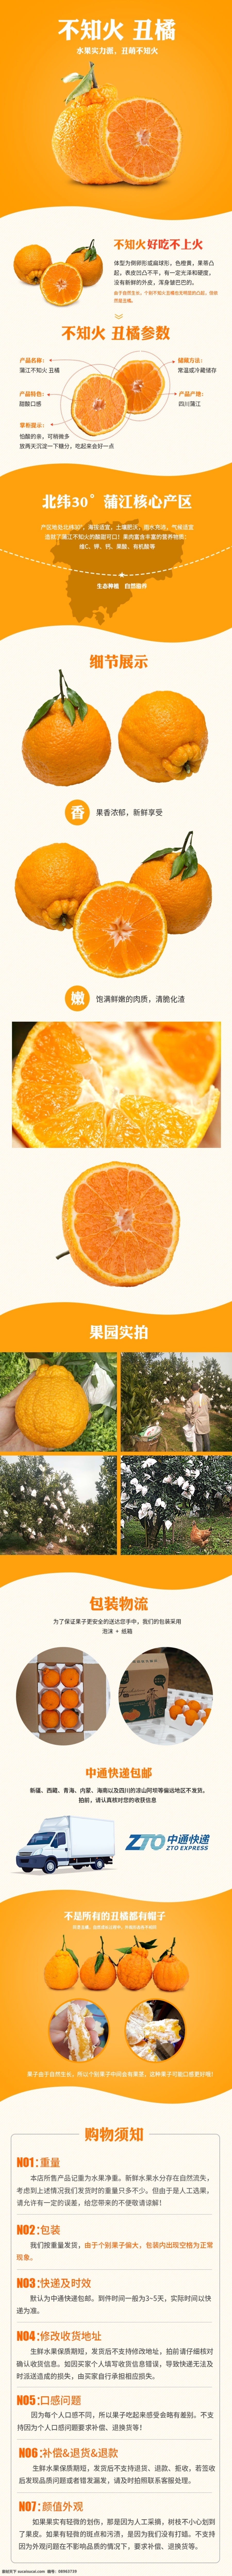 不知 火 淘宝 天猫 水果 详情 不知火 丑橘 橙色 生鲜 清新 蒲江